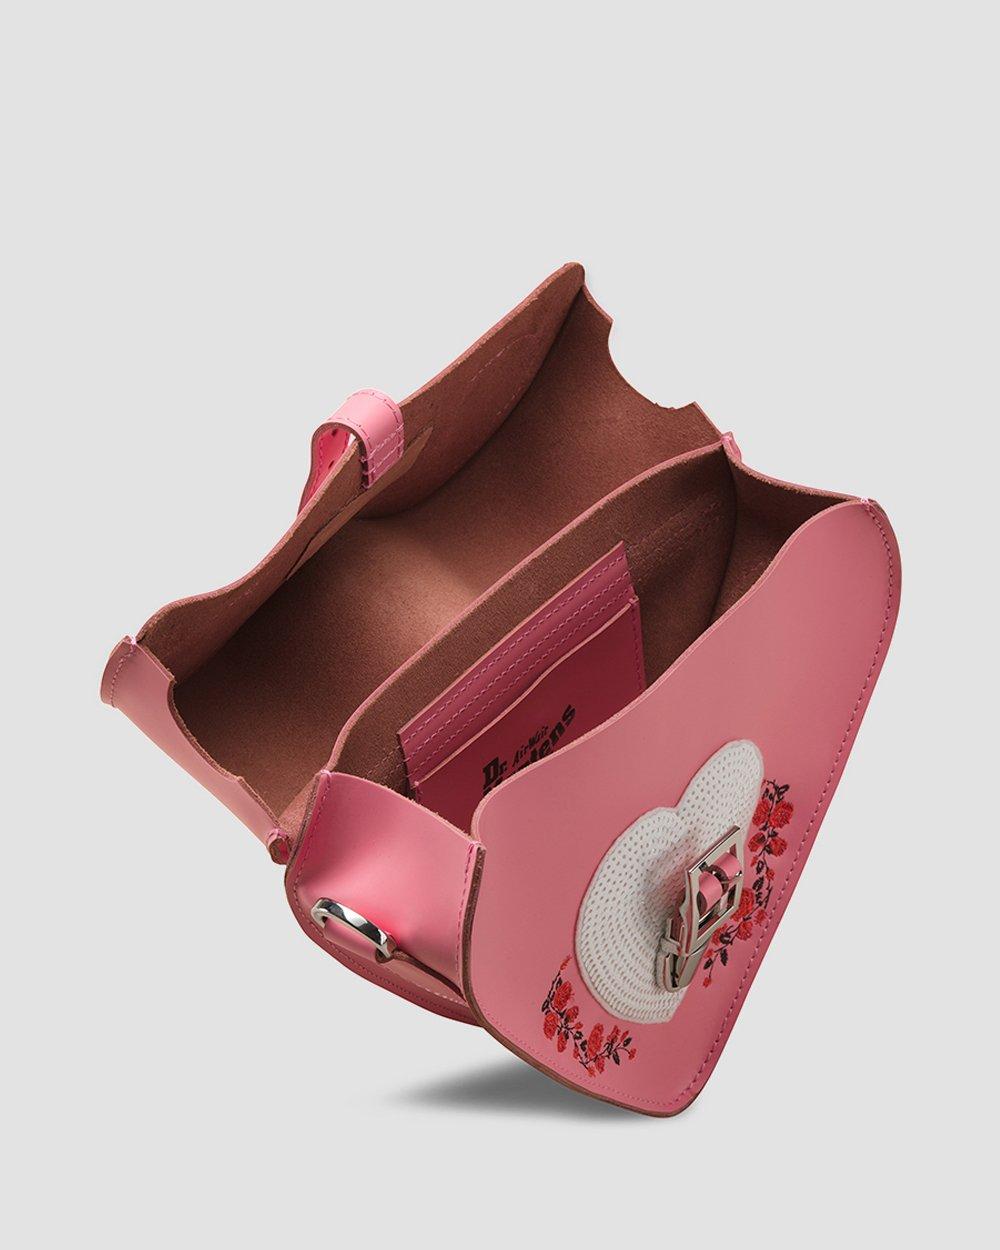 Dr. Martens 2019 Valentine's Limited Heart Bag Pink